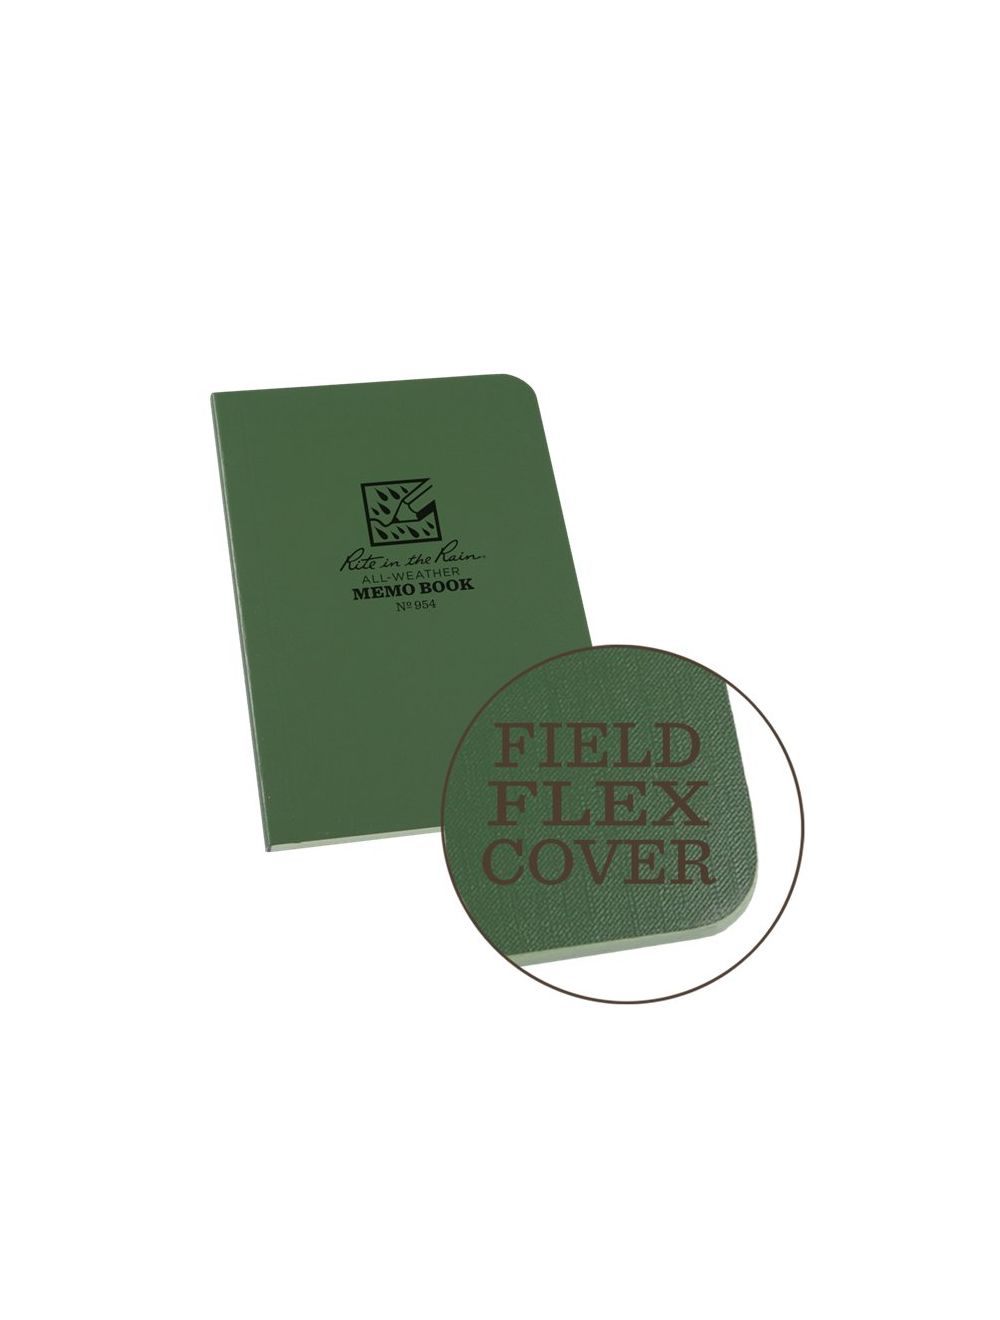 Field-Flex Soft Cover Book - 3.5 x 5